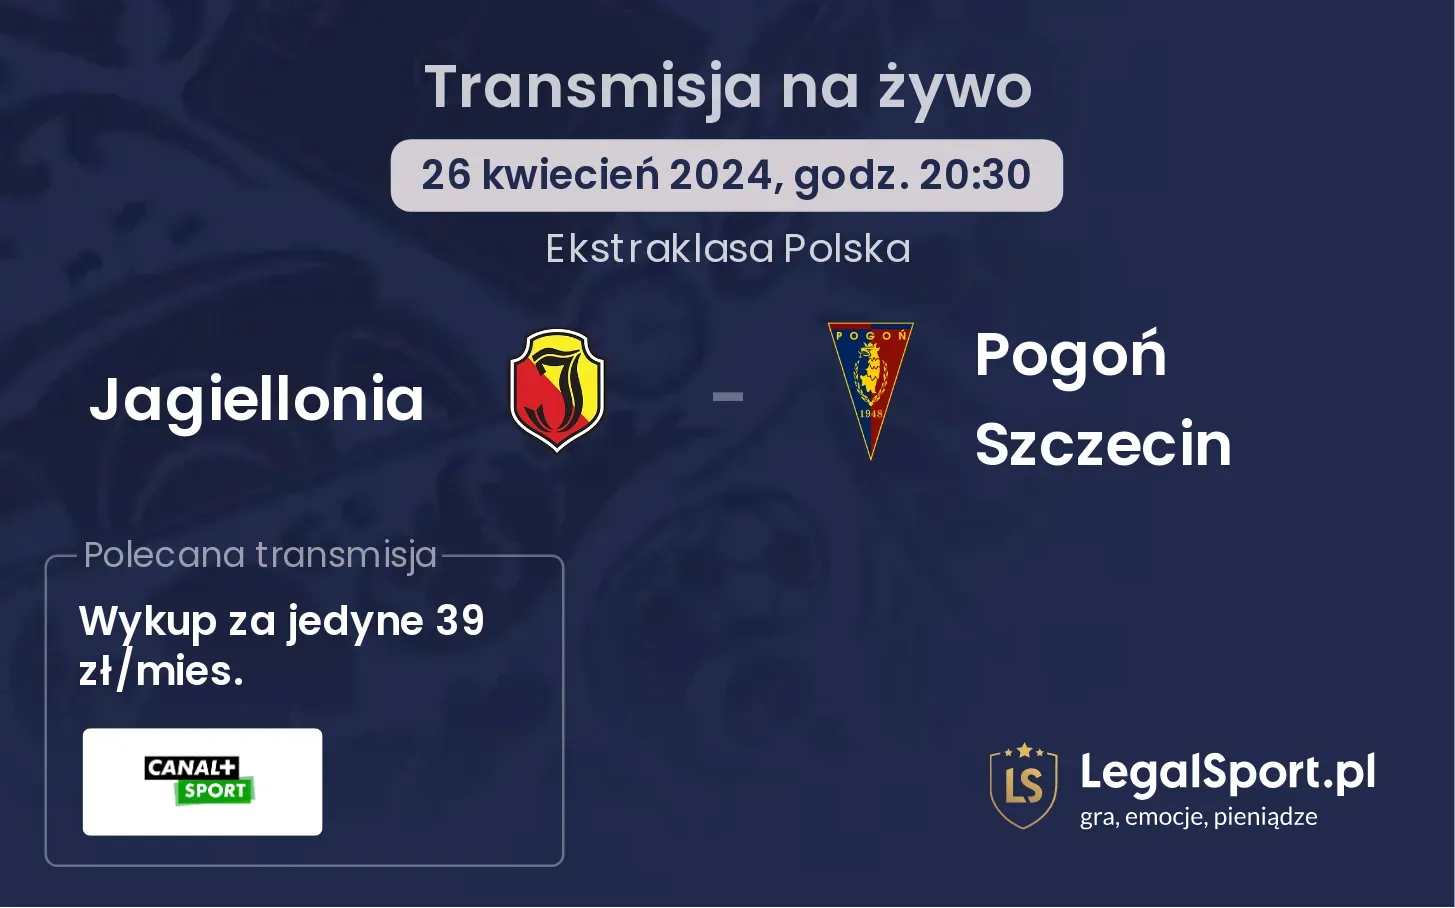 Jagiellonia - Pogoń Szczecin transmisja na żywo